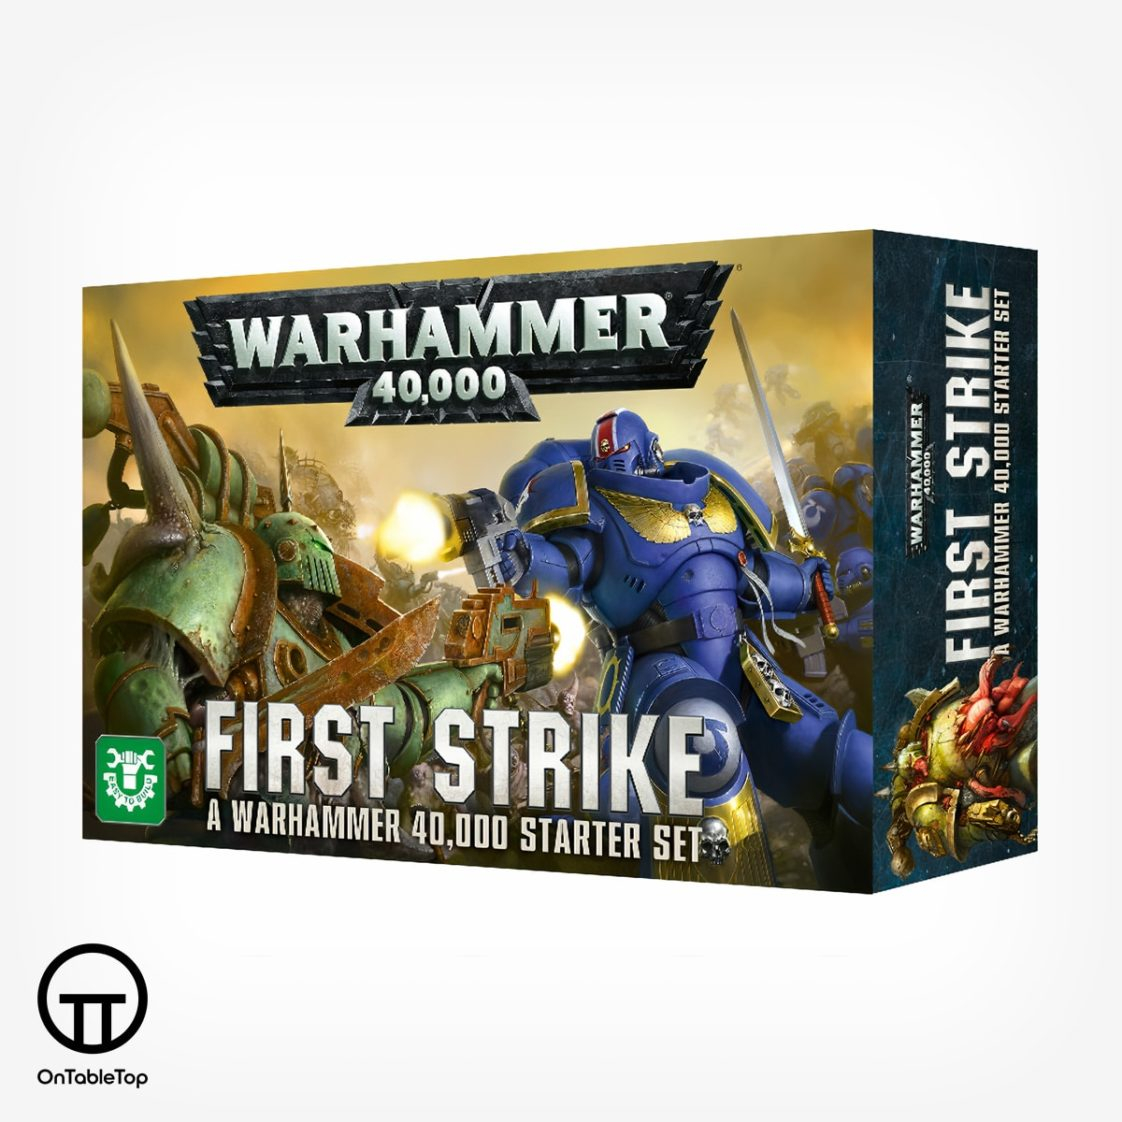 First Strike A Warhammer 40,000 Starter Set 60010199018